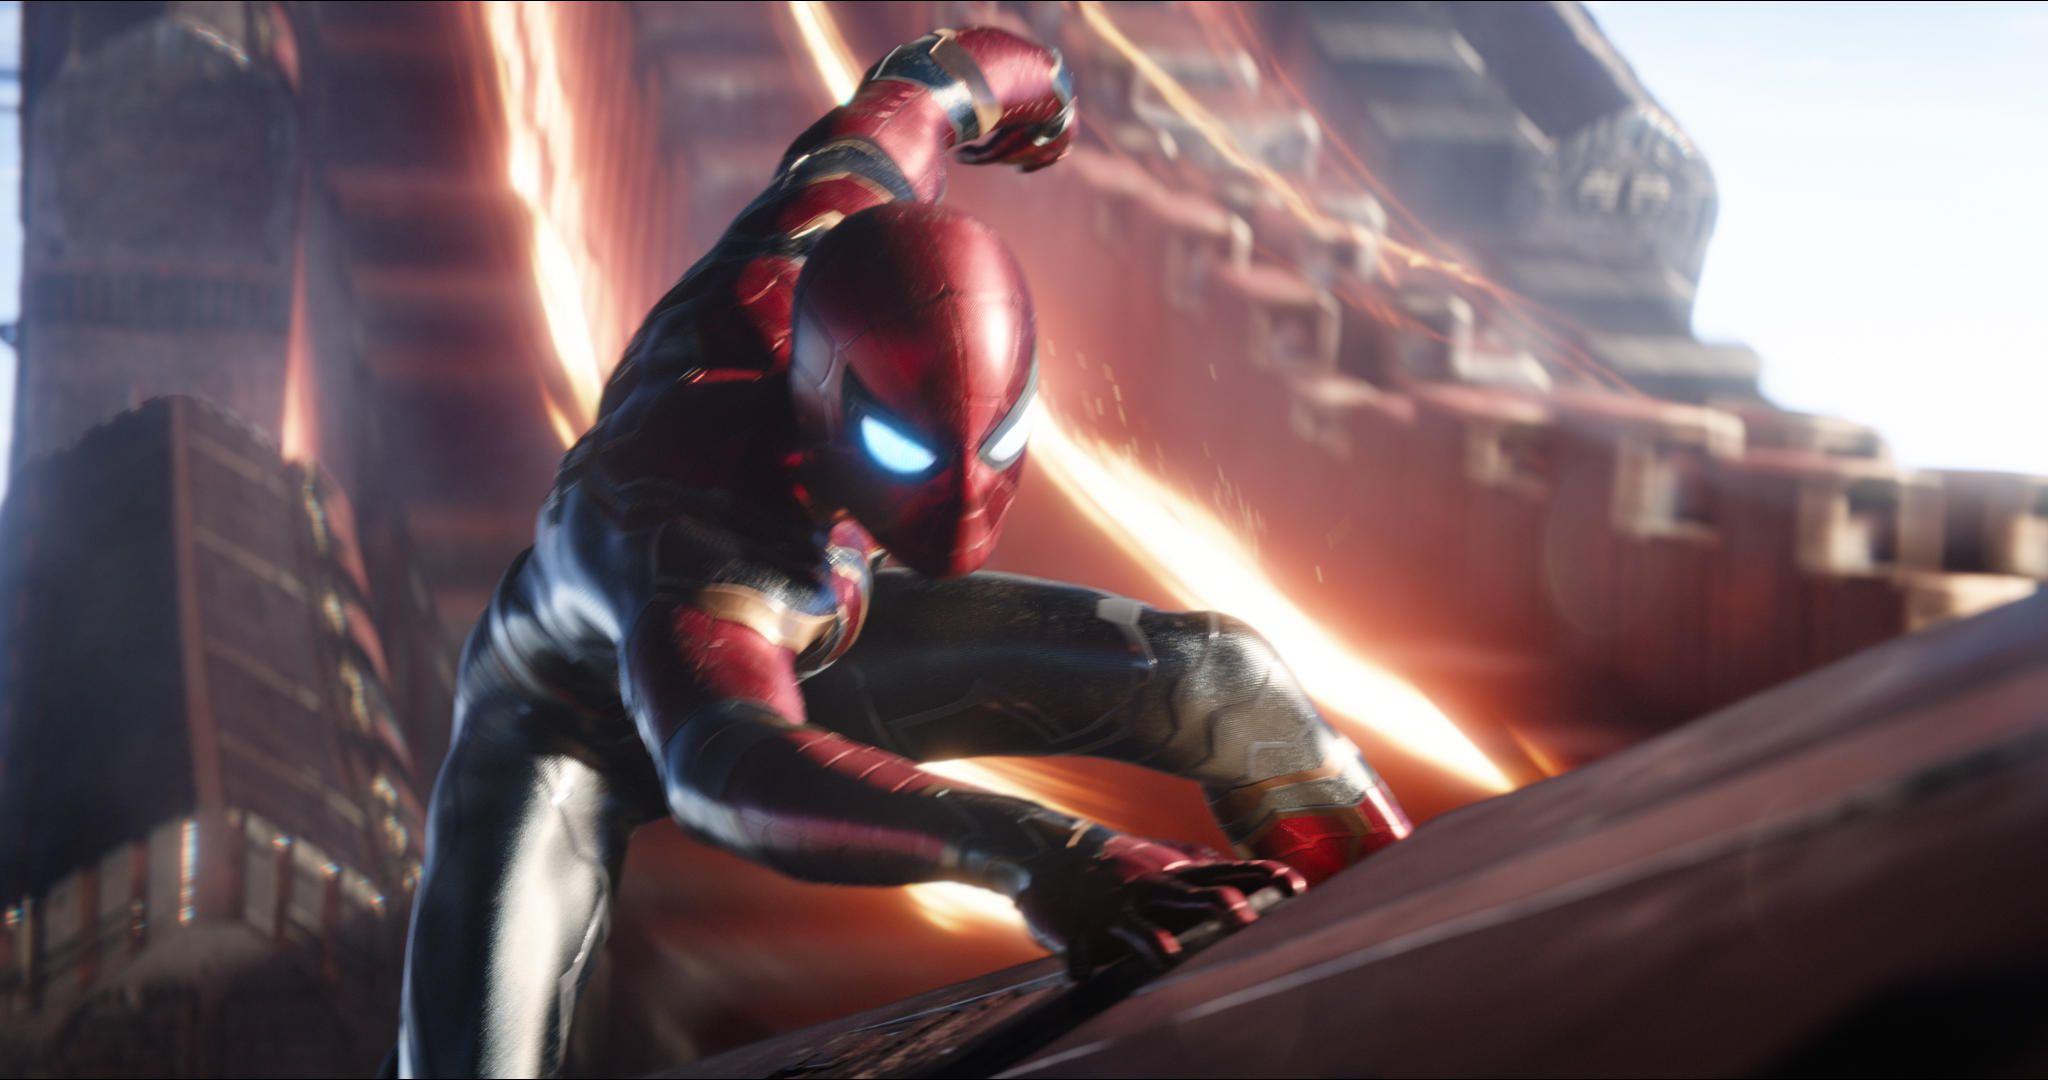 HD wallpaper: Avengers: Infinity War, 2018, Spider-Man | Wallpaper Flare